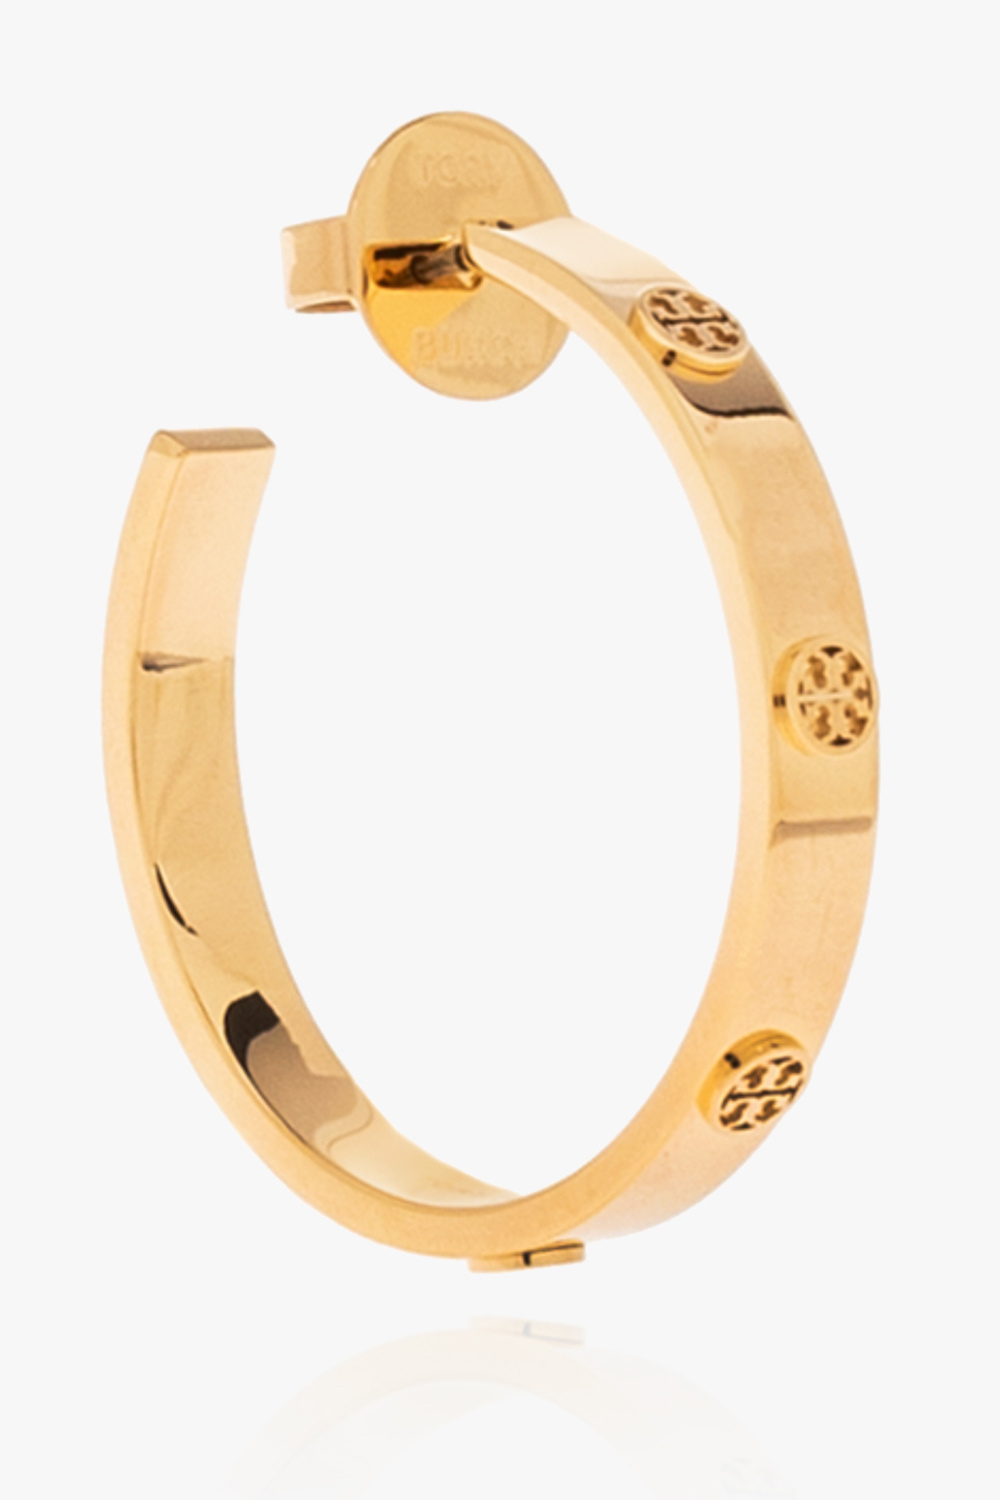 Tory Burch Kids' Miller Bracelet In Gold Steel